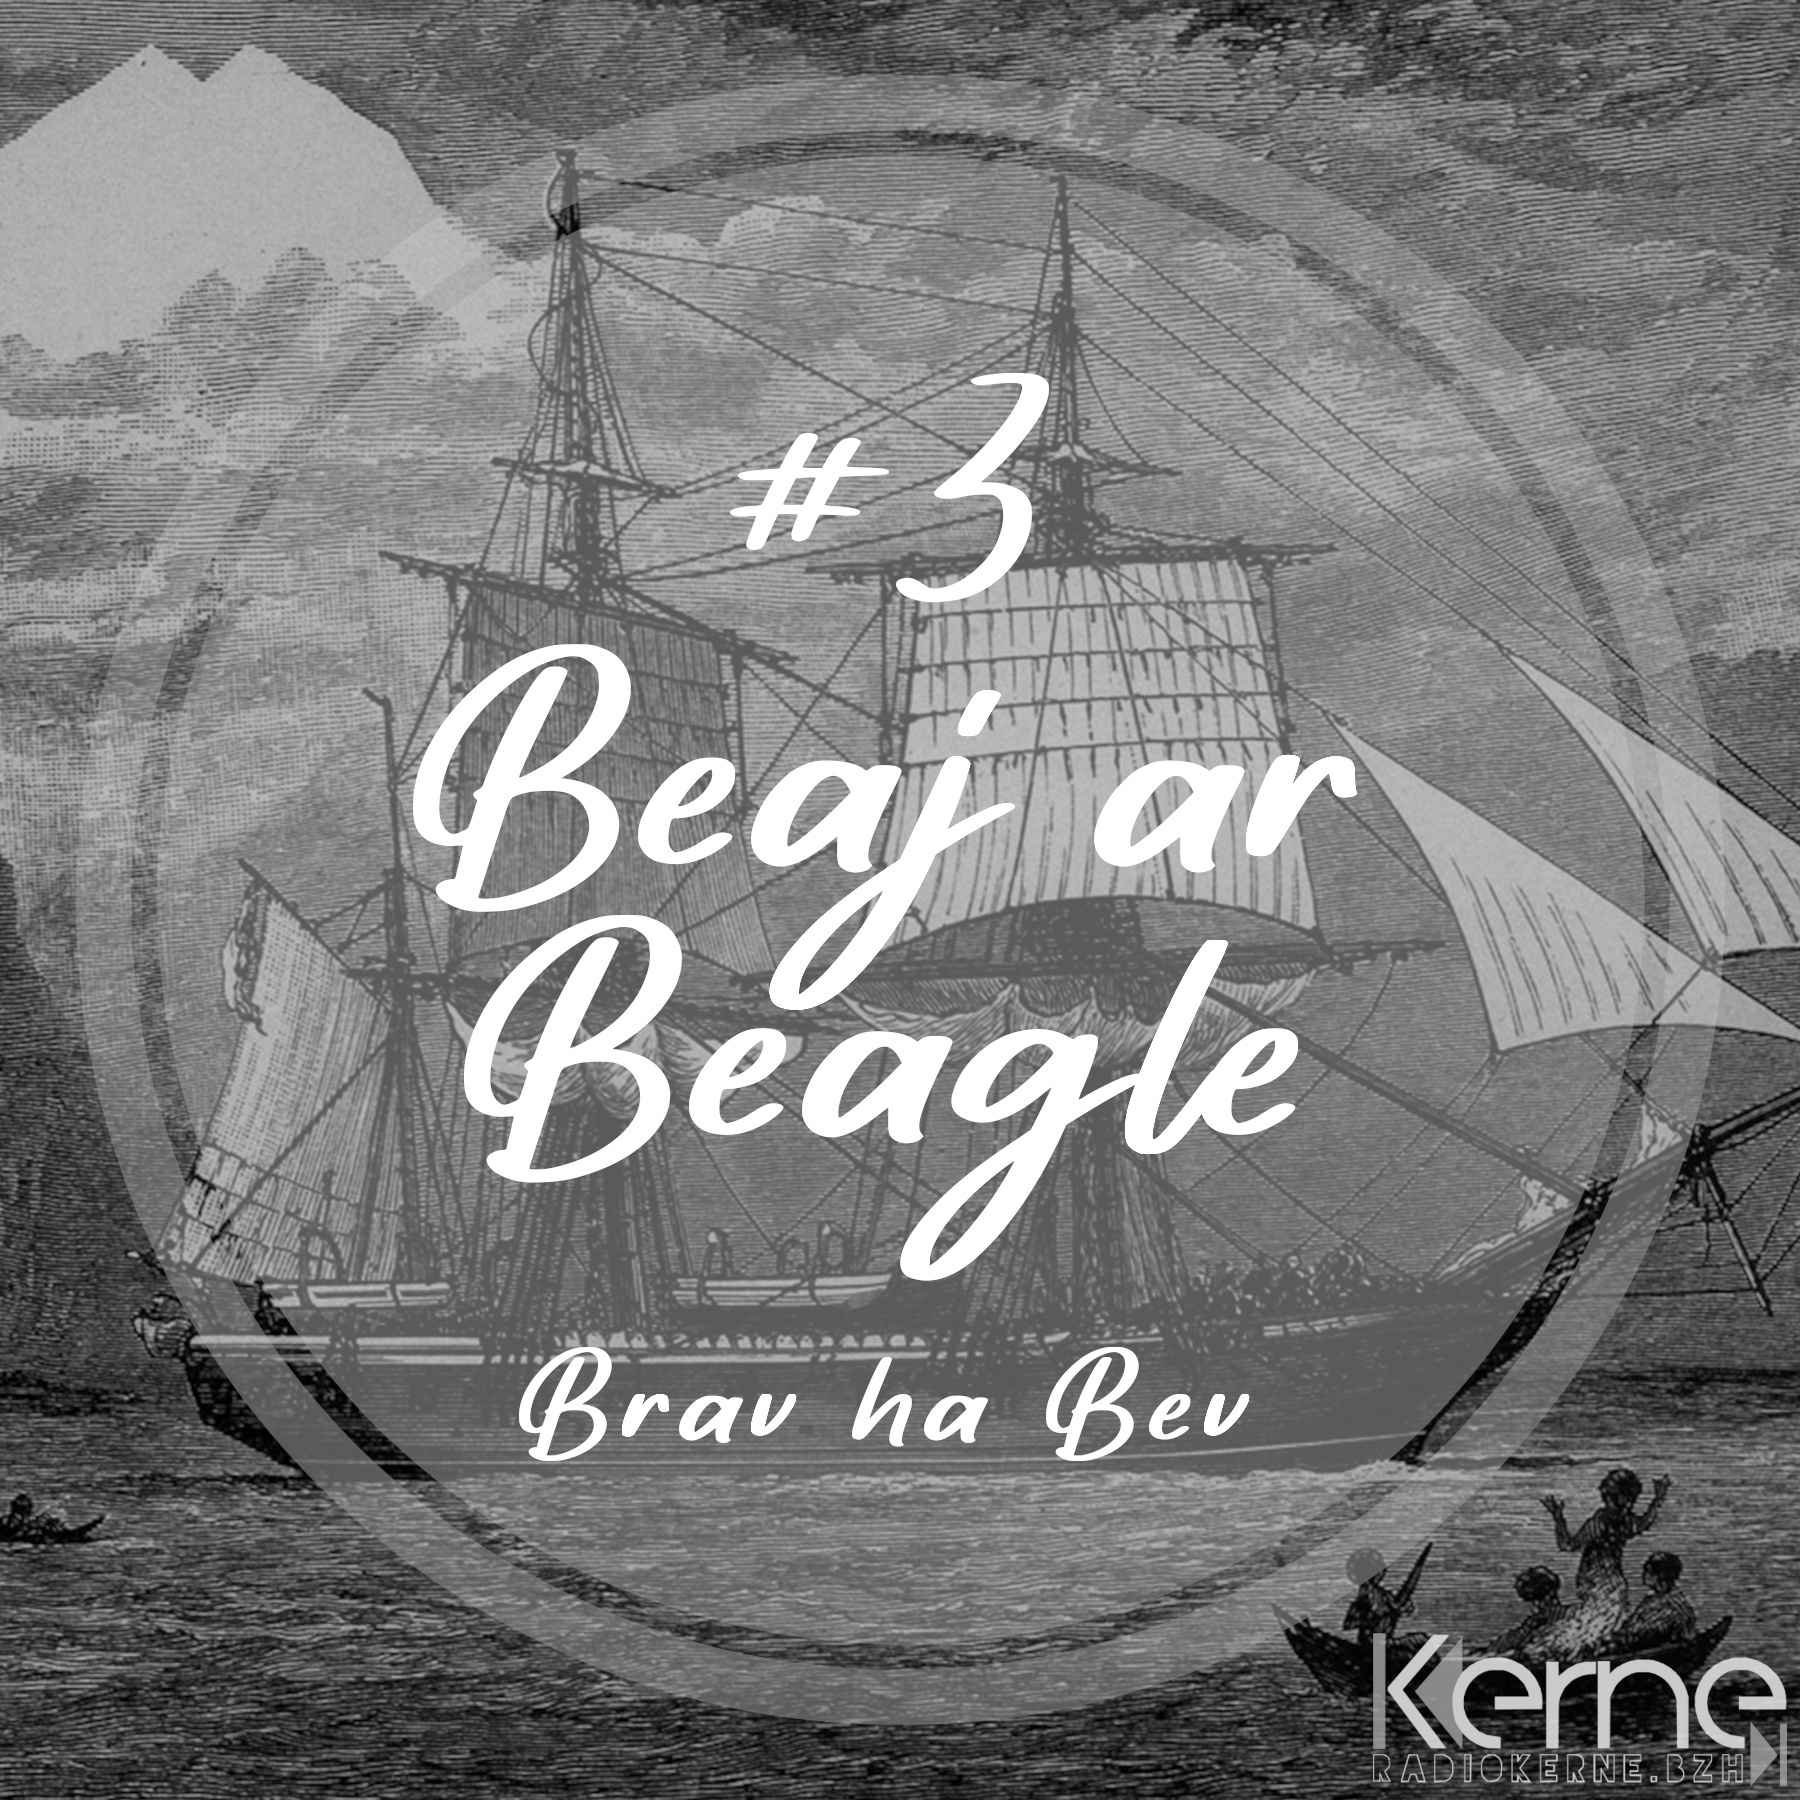 #3 Beaj ar Beagle